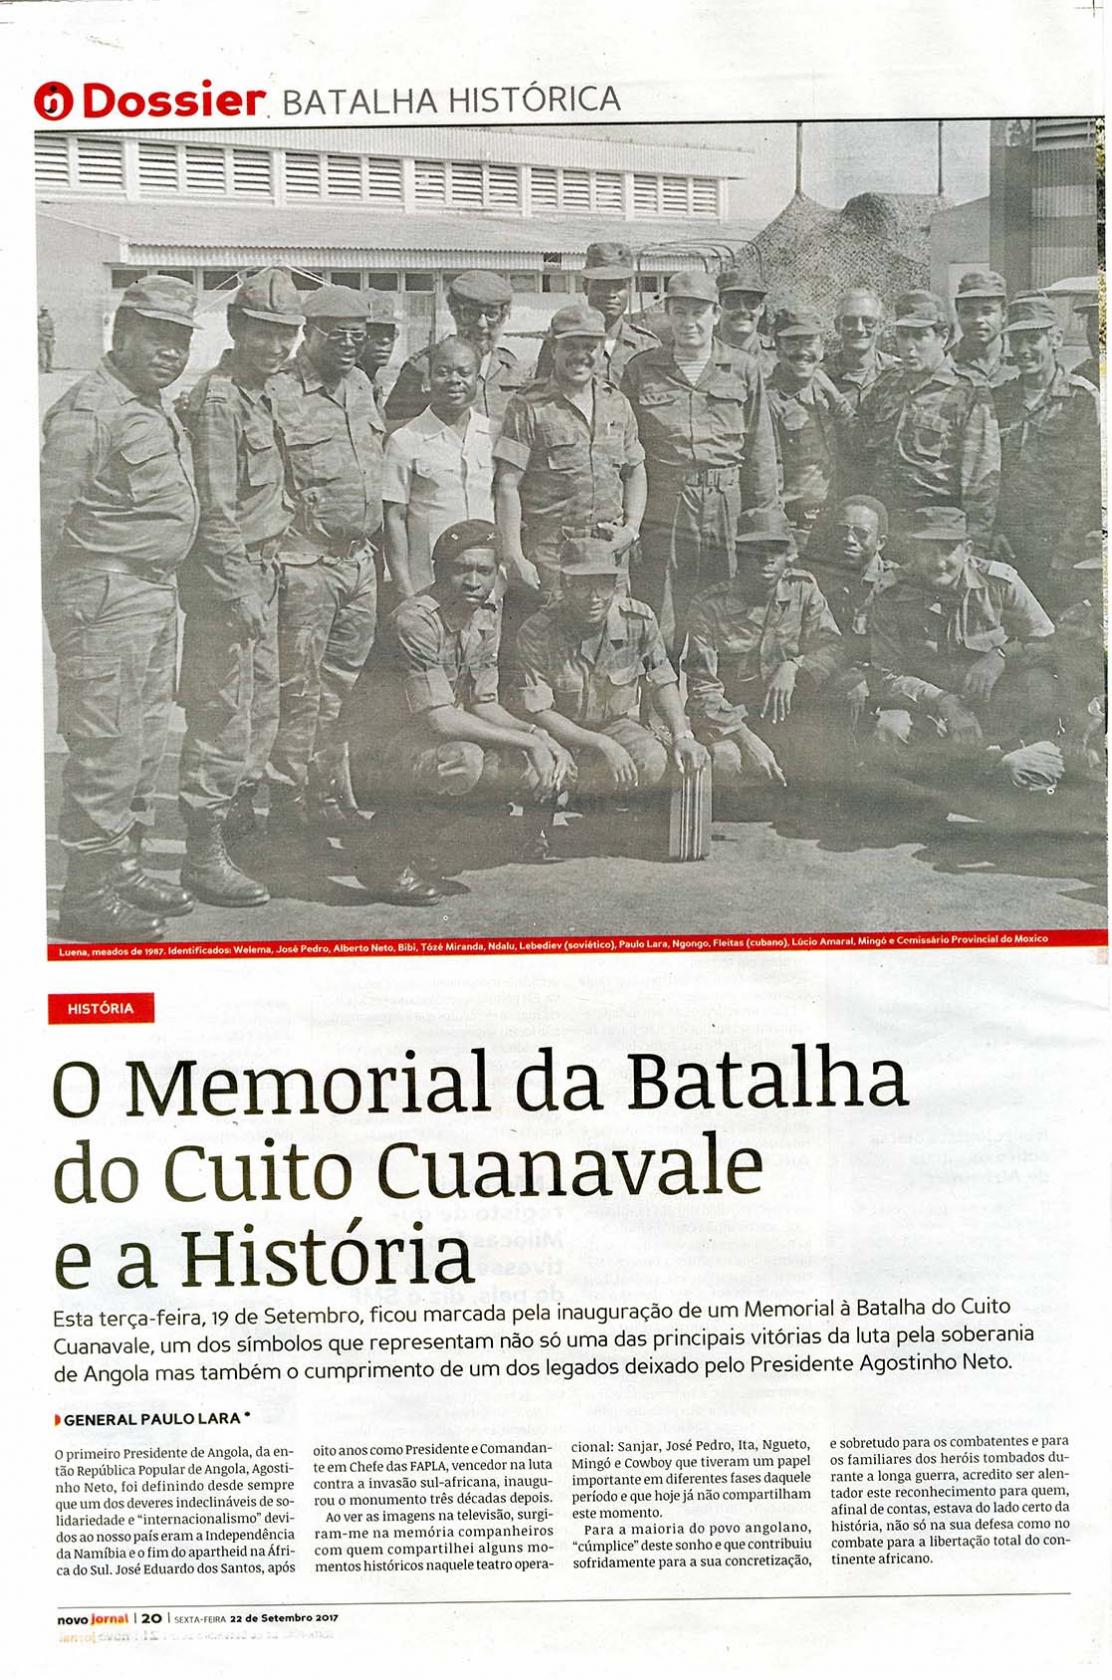 O Memorial da batalha do Cuito Cuanavale e a História